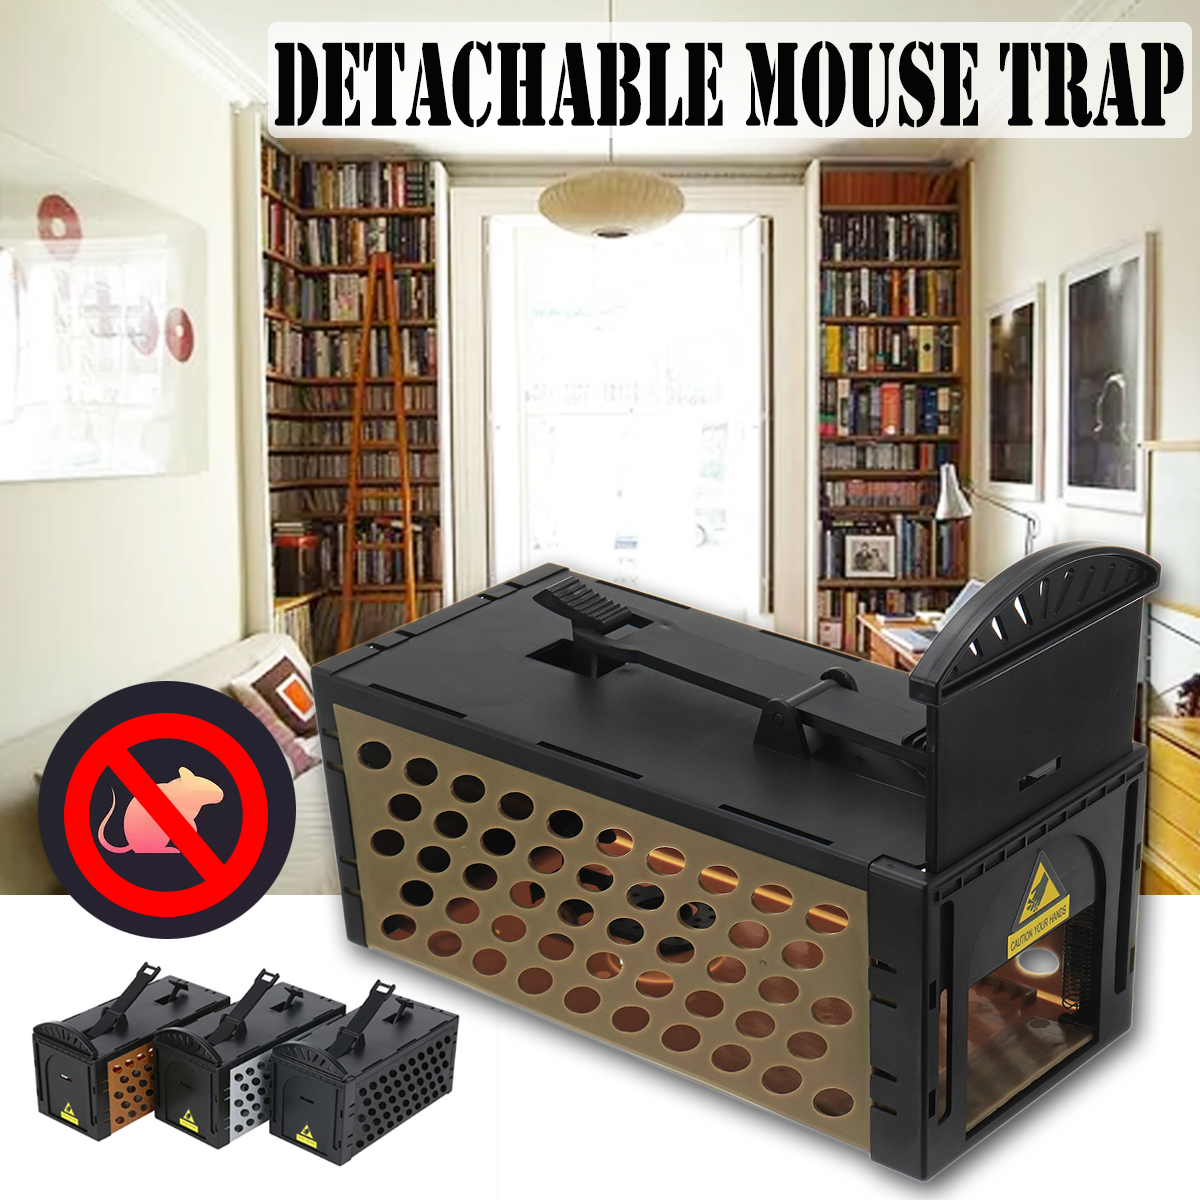 Detachable-Mousetrap-Live-Rodent-Trap-Rat-Mice-Rodent-Zapper-Repel-Rat-Killer-Mouse-Trap-1404885-1